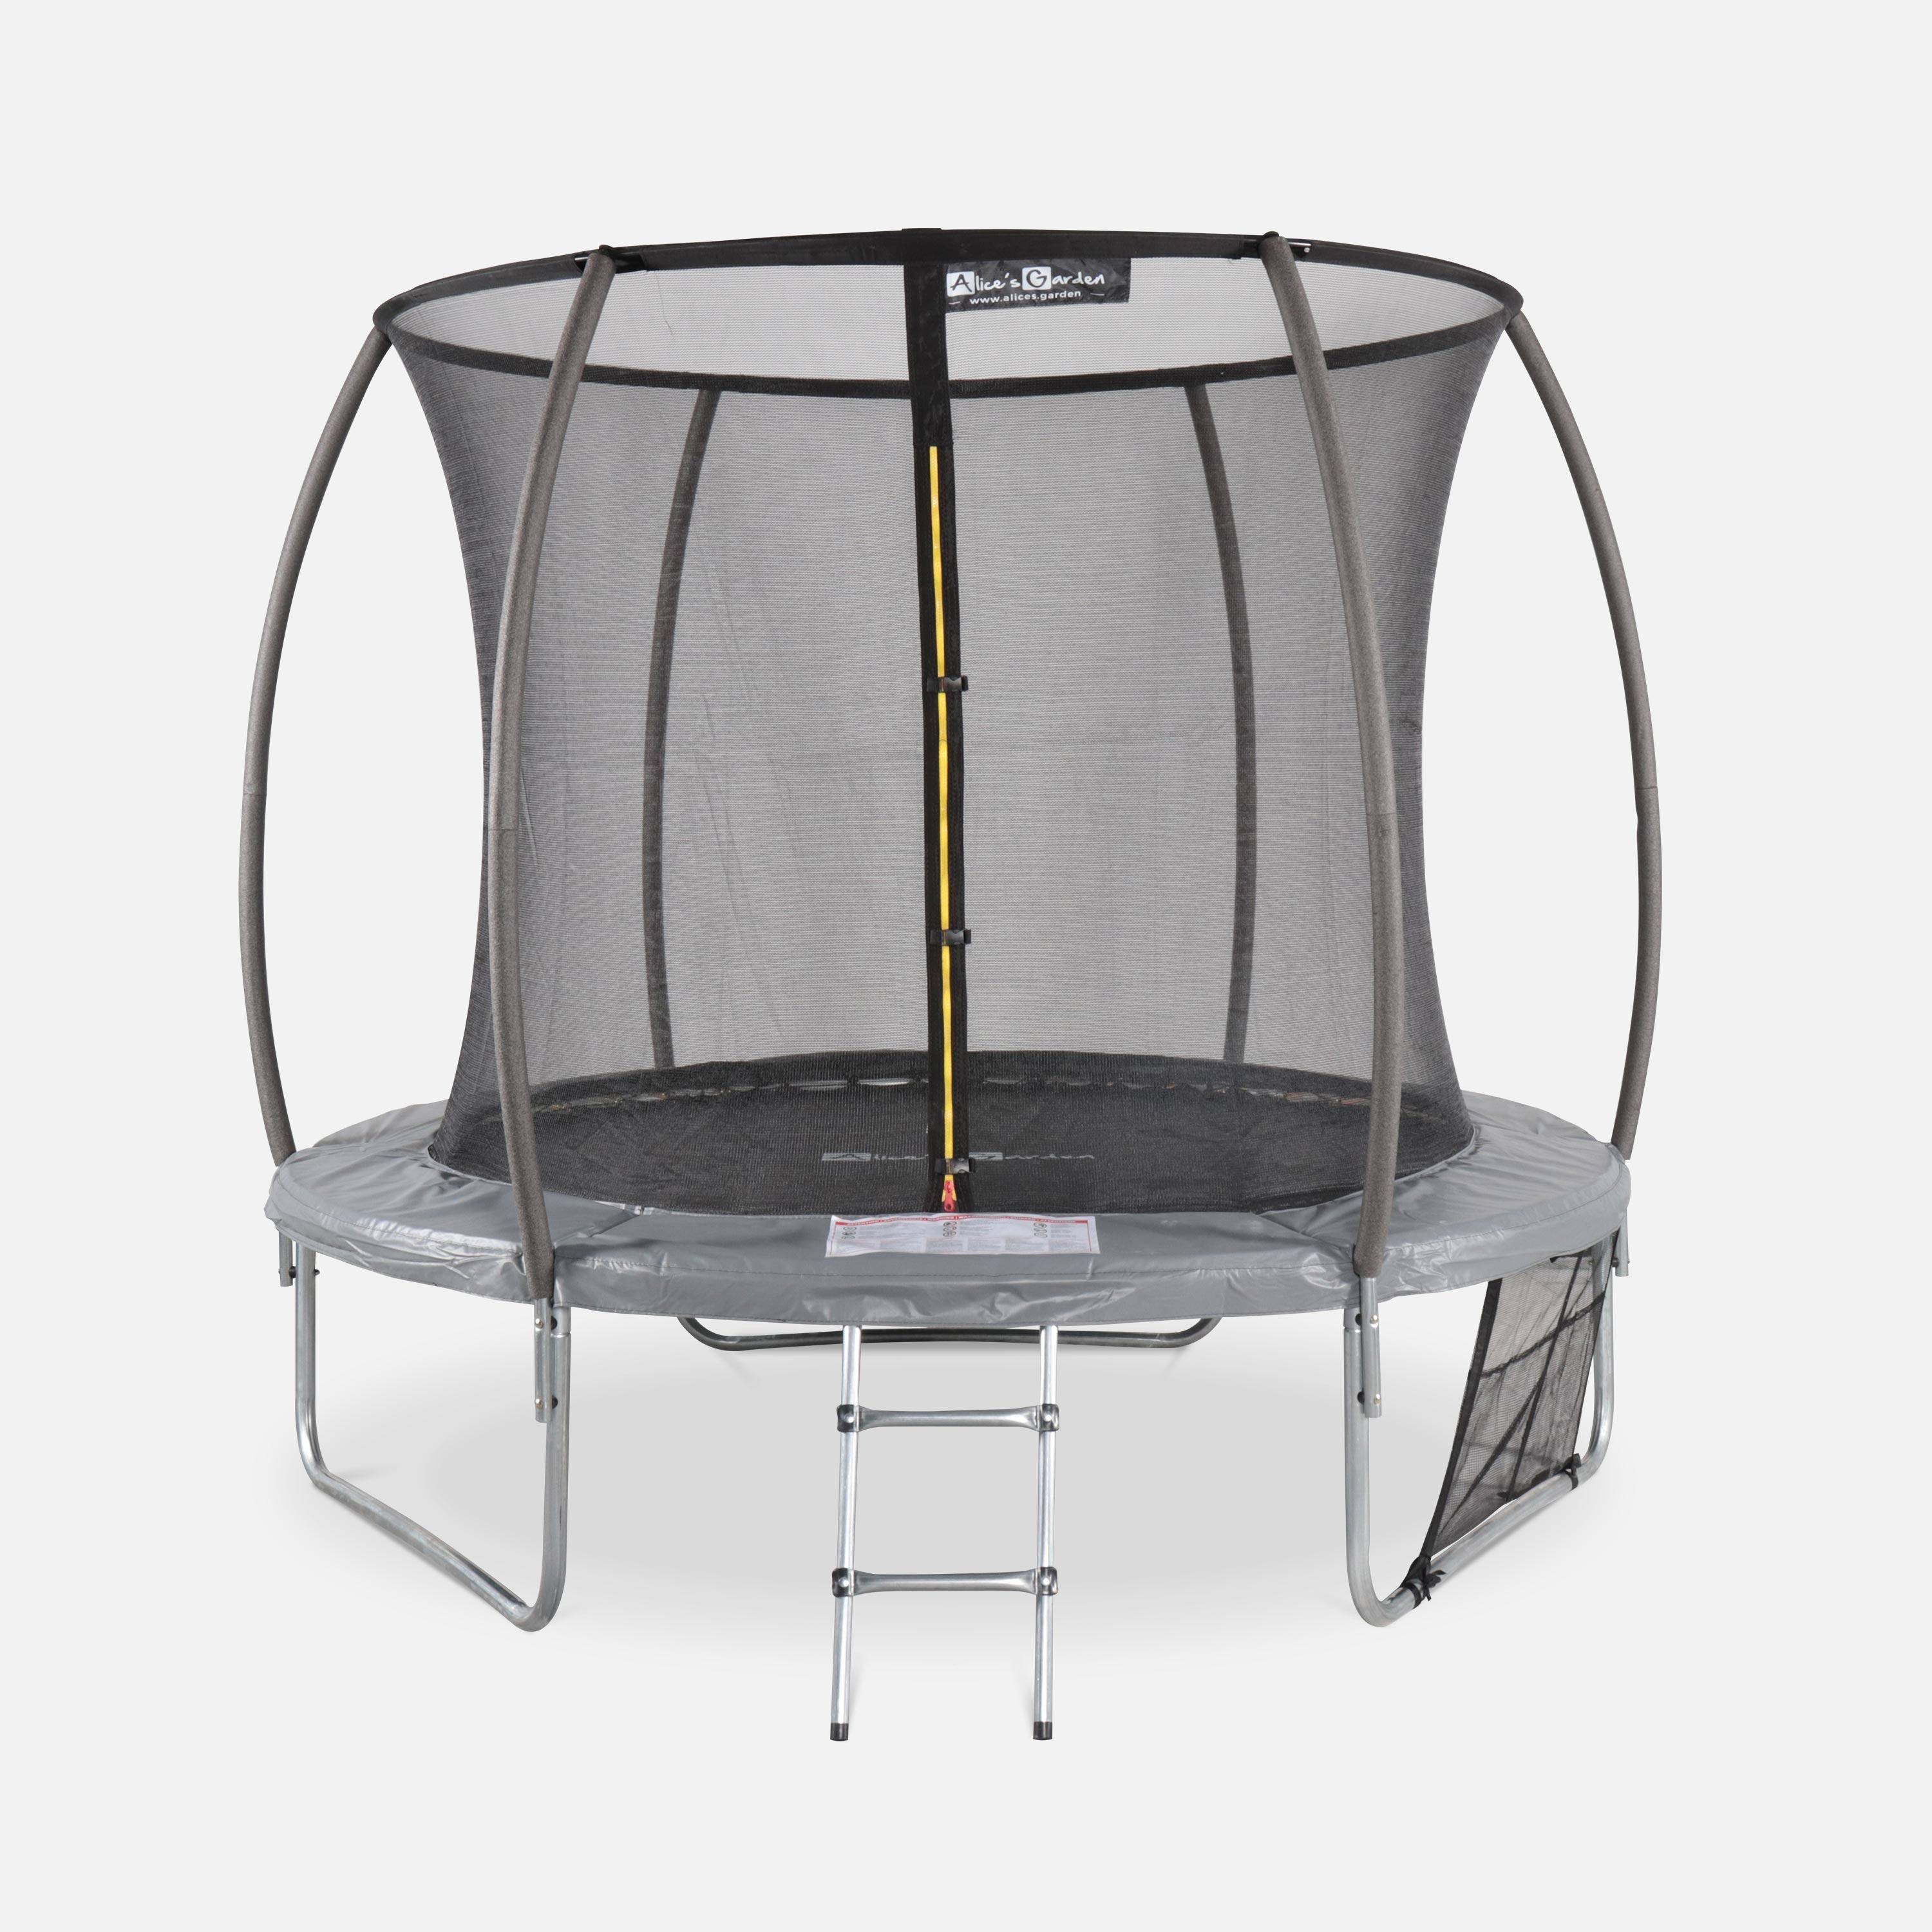 Trampoline Ø 250cm - Pluton Inner XXL- trampoline de jardin gris avec filet de protection intérieur, échelle, bâche, filet pour chaussures et kit d'ancrage 2,50m 250cm Photo2